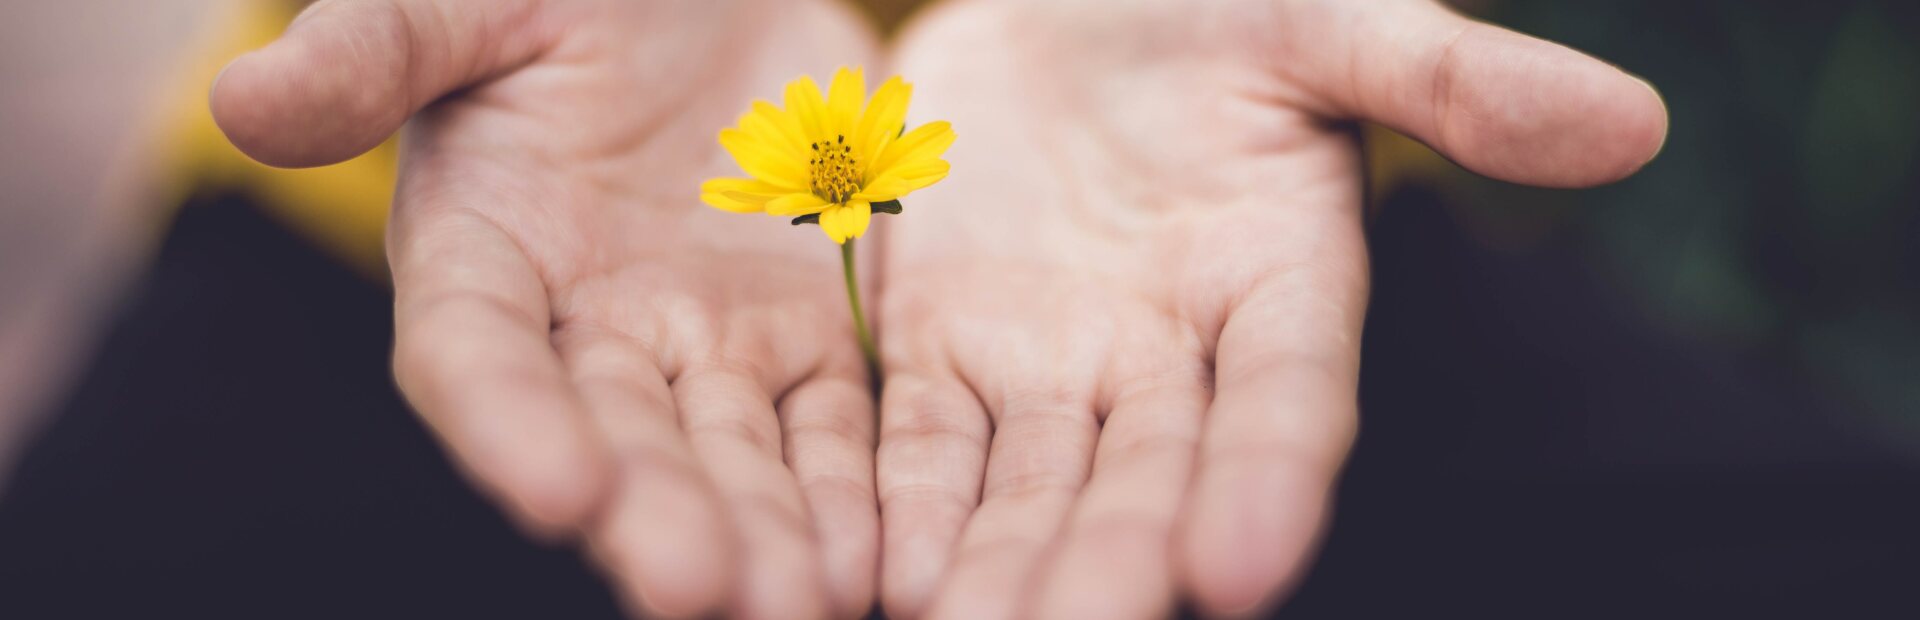 Hände mit Blume dazwischen